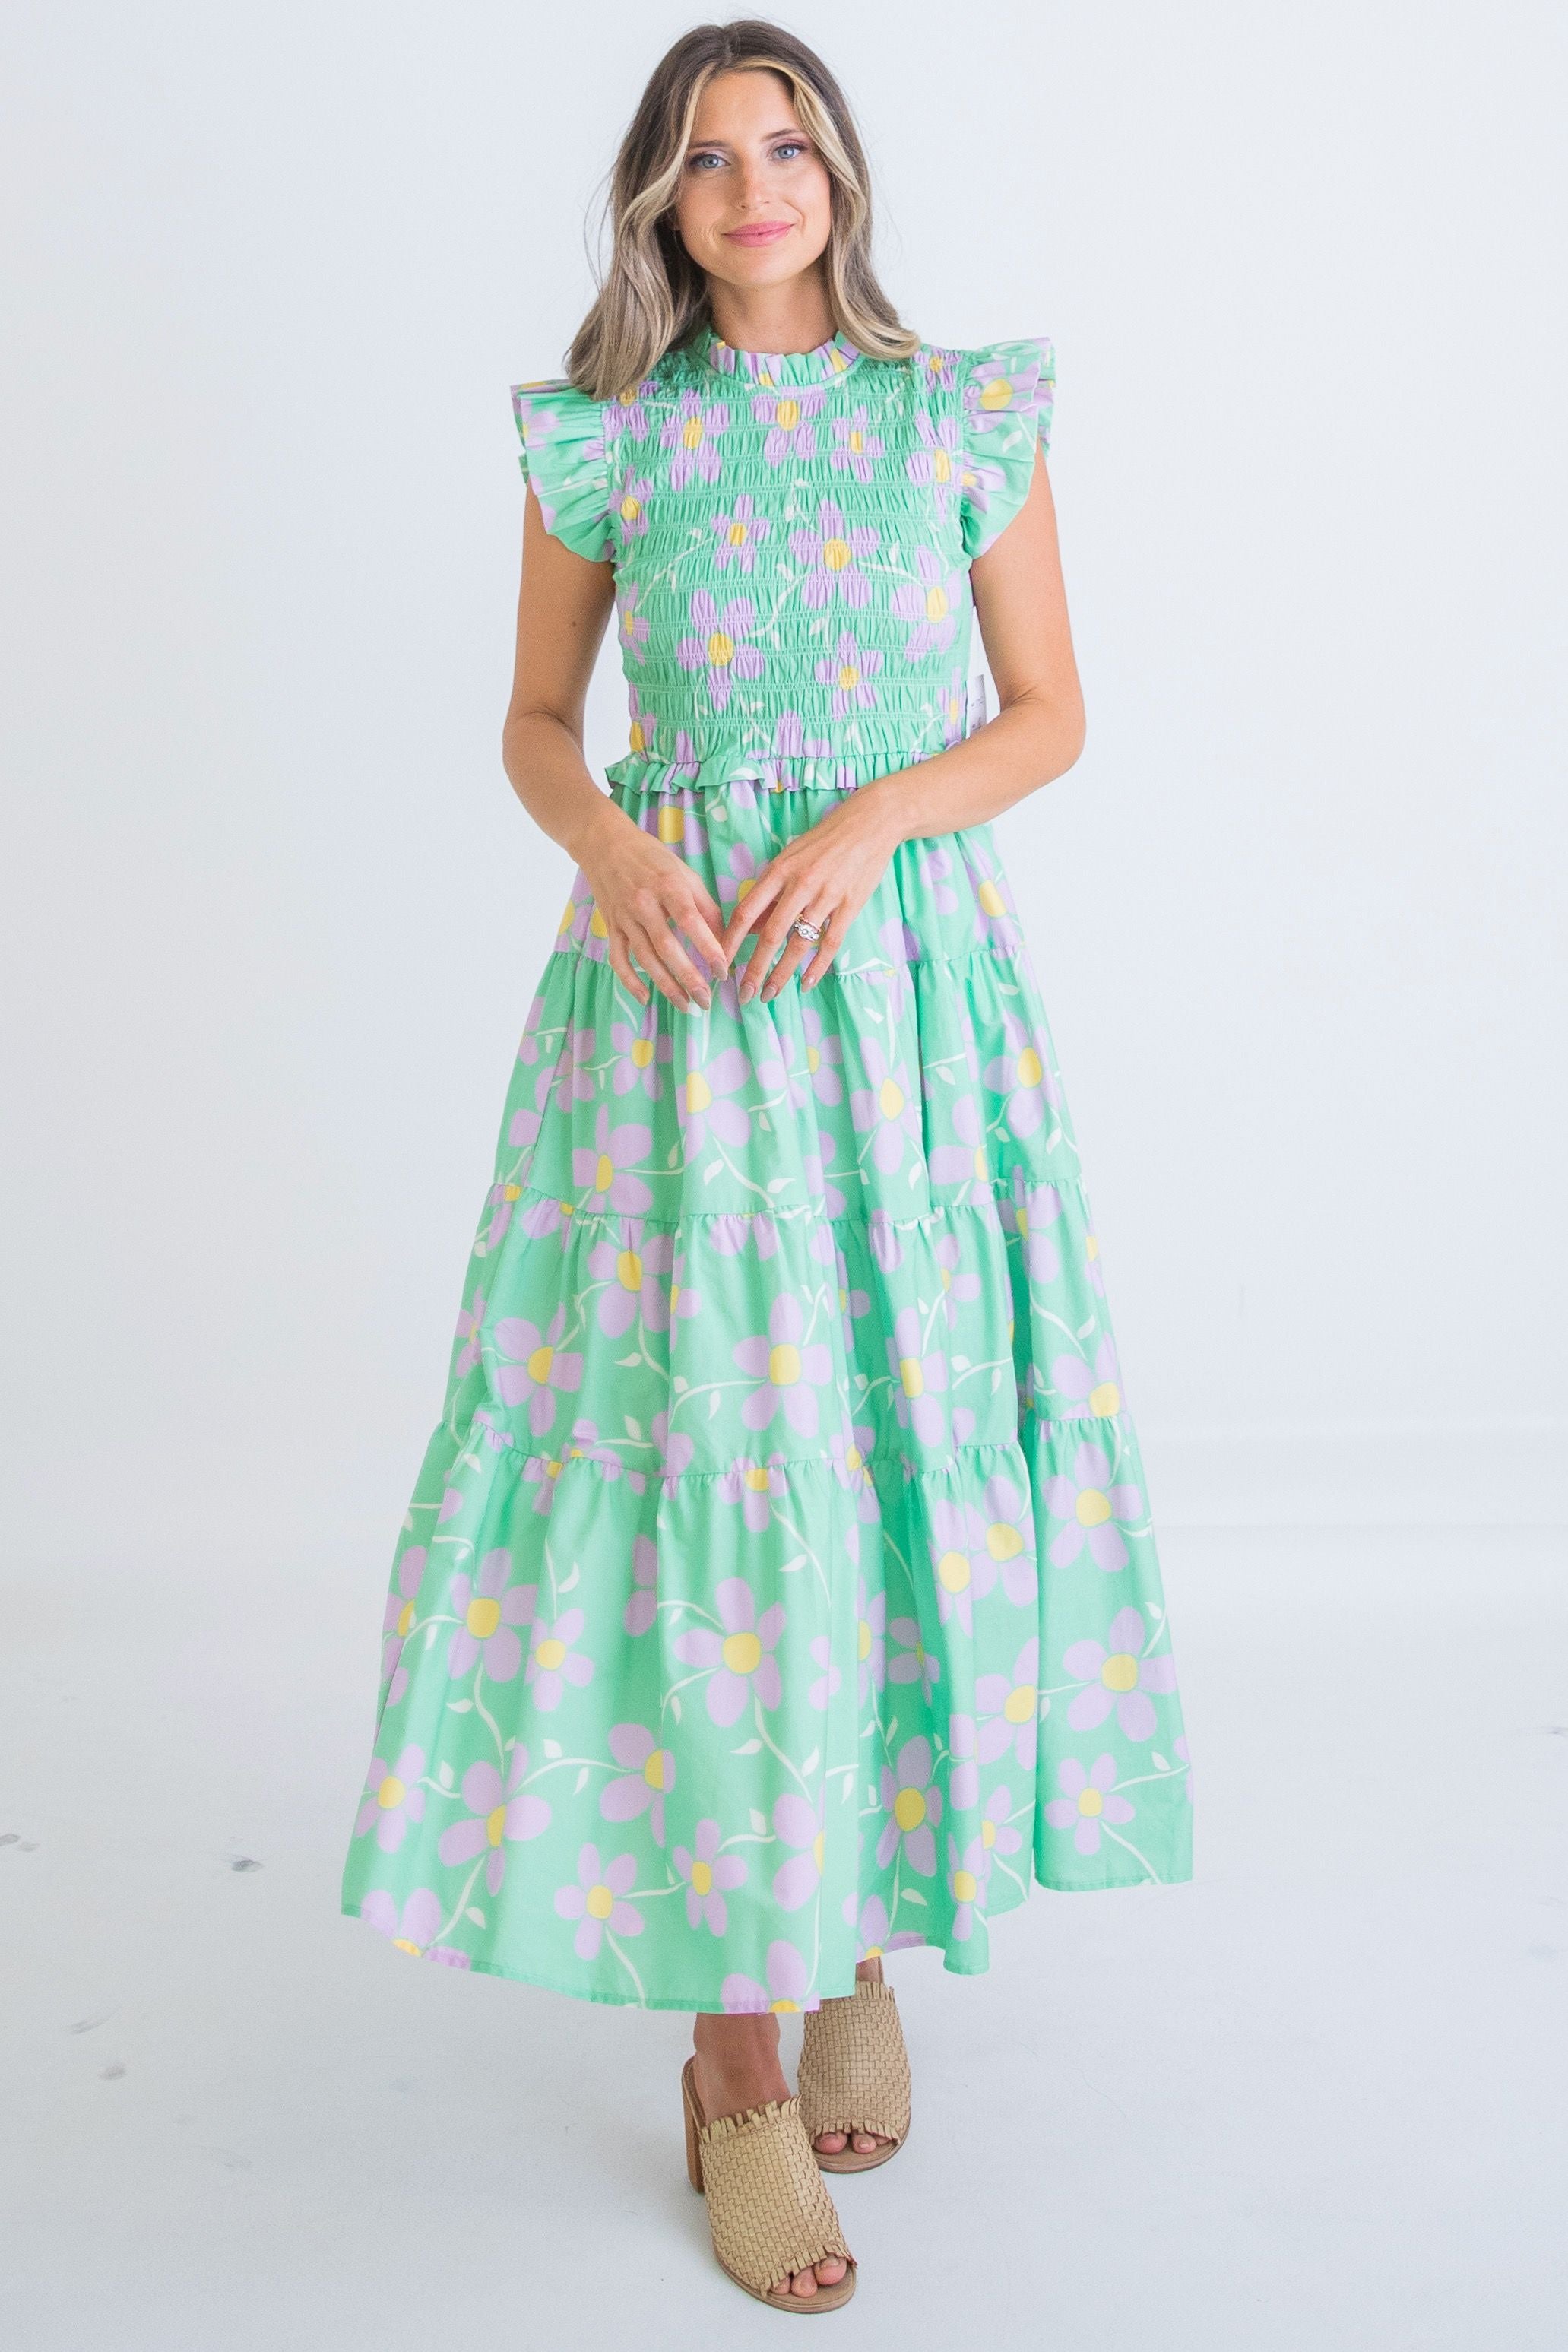 Daisy Smocked Tiered Sleeveless Maxi Dress- Green